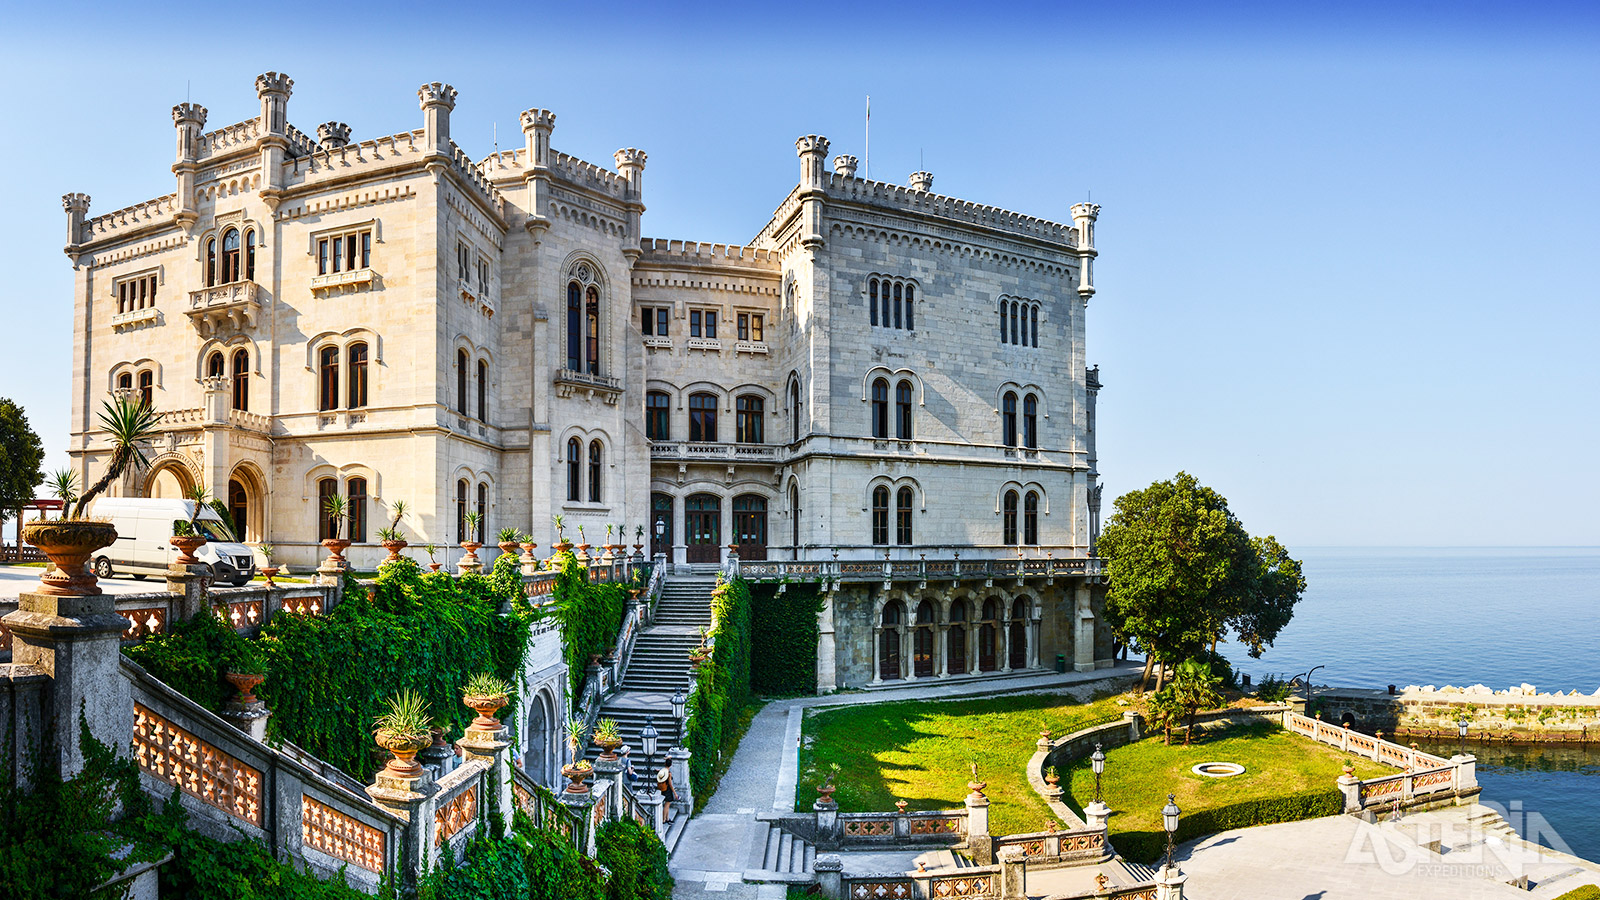 Het kasteel van Miramare werd tussen 1856 en 1860 gebouwd als zomerverblijf voor Maximiliaan van Habsburg en Charlotte van België, dochter van koning Leopold I